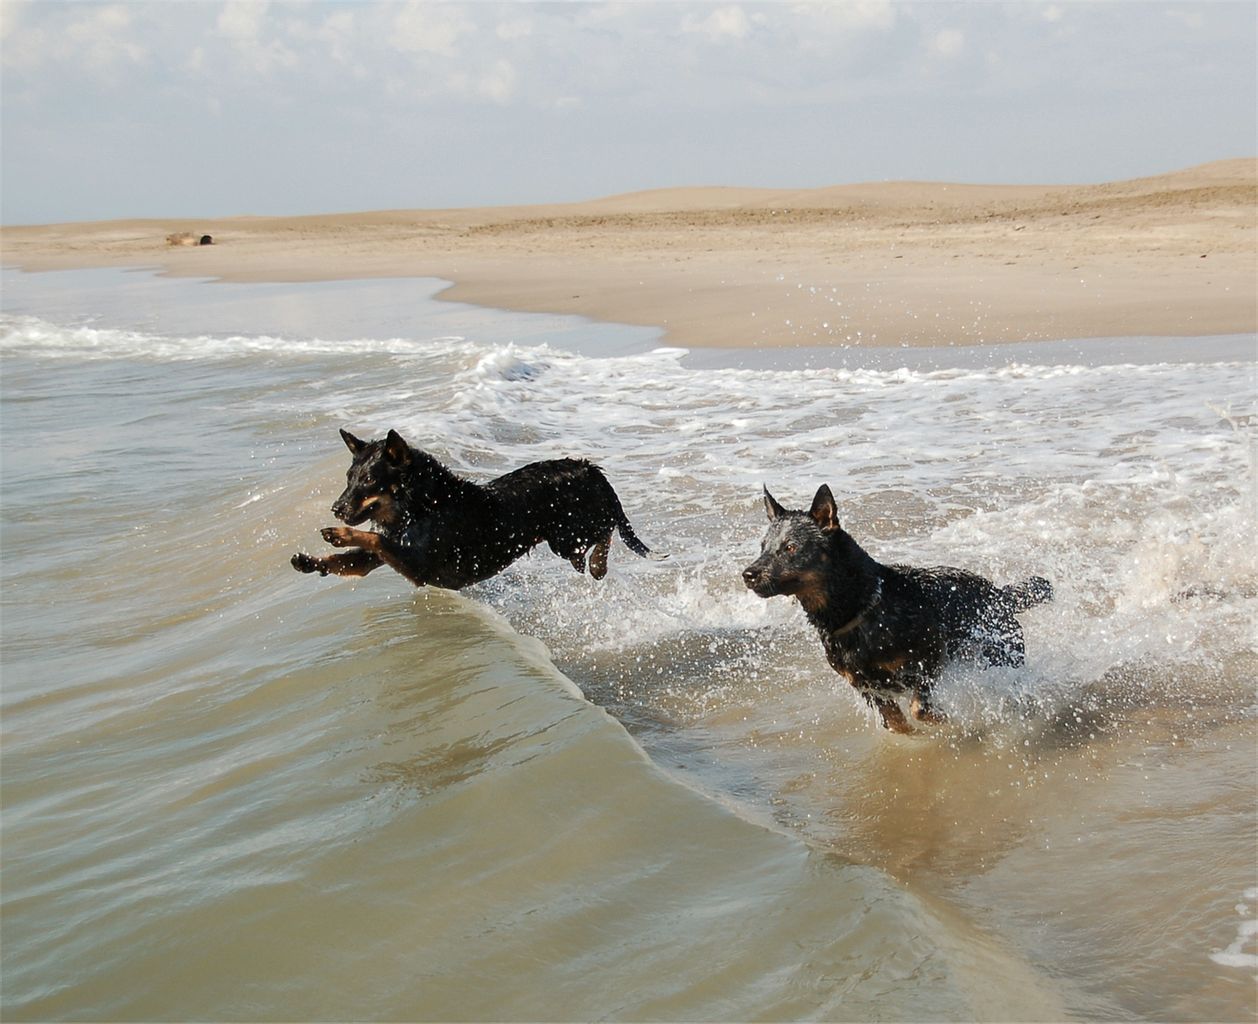 צילום: כלבים רועים אוסטרליים רצים לשחות